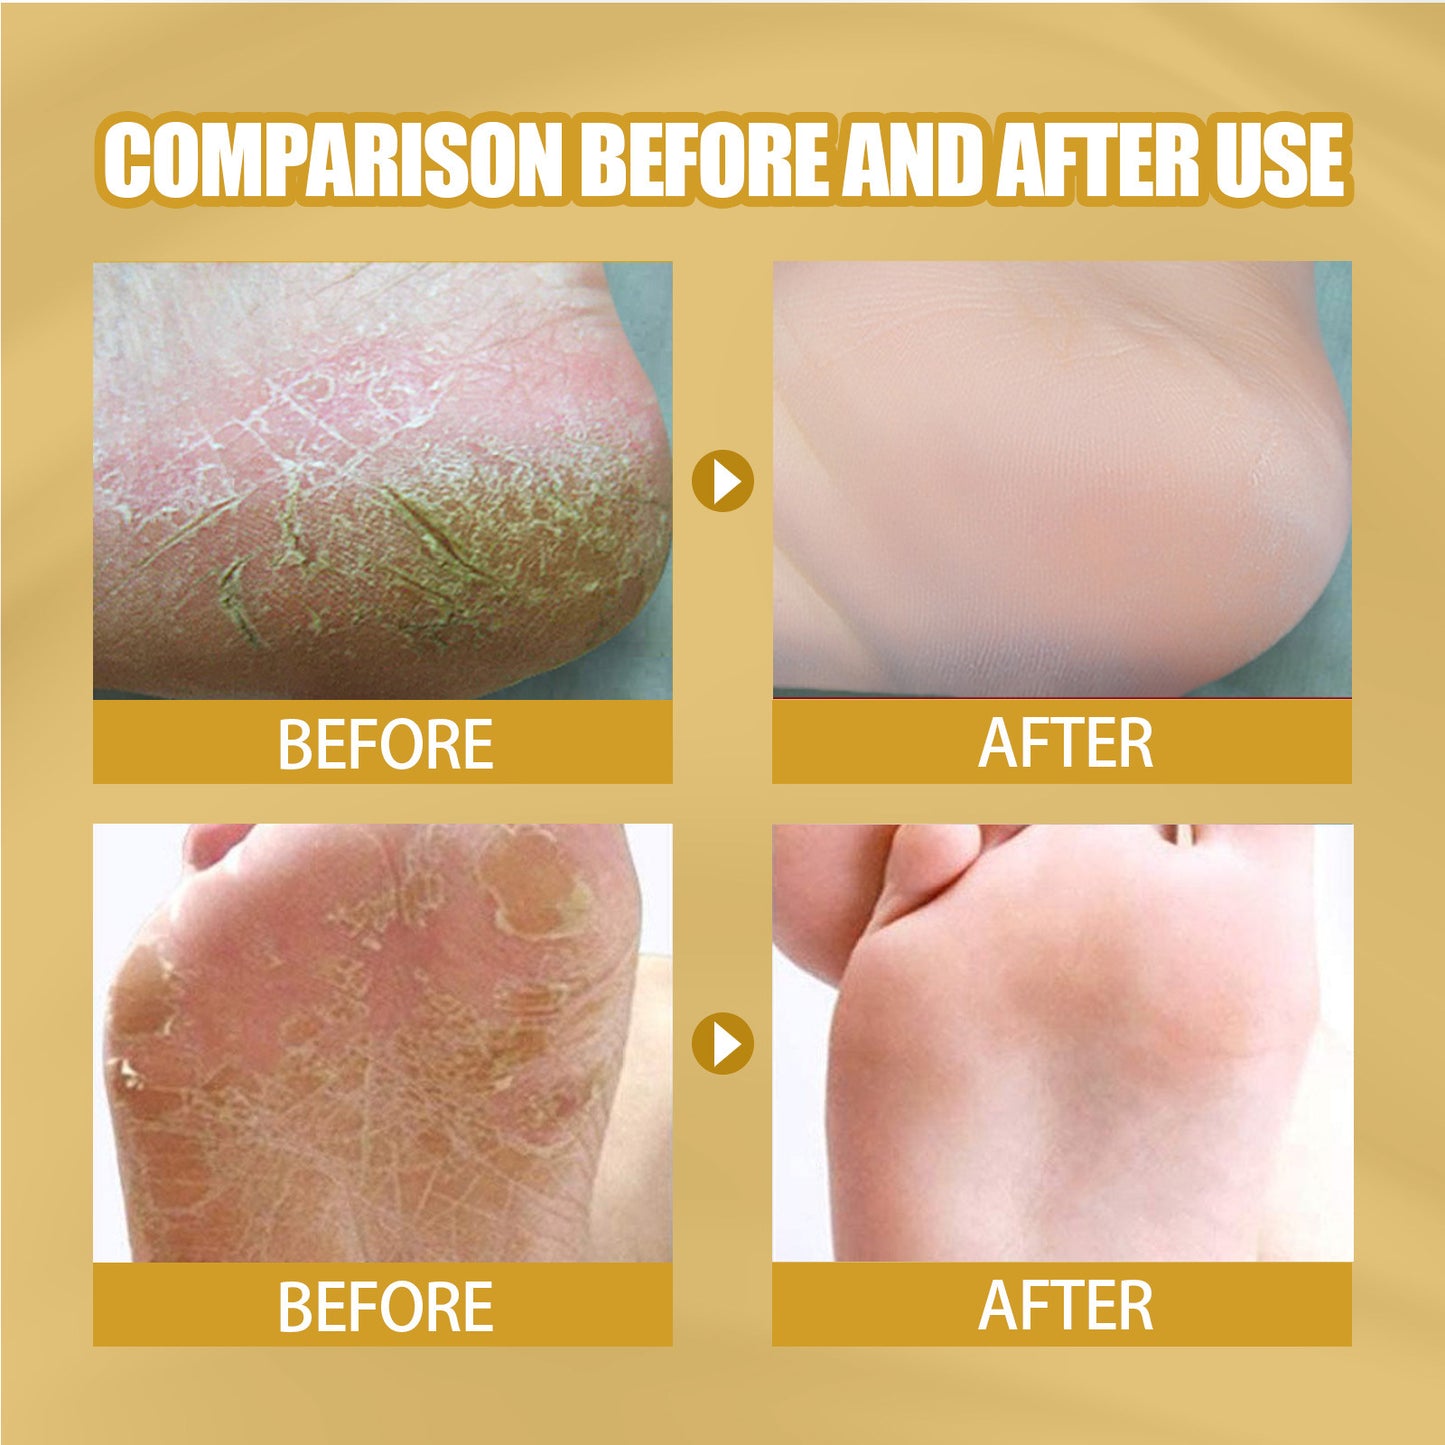 EELHOE Skin Cracking Banana Repair Cream Foot Care Anti freezing Crack Anti Dry Cracking Hand and Foot Care Repair Cream(20g)